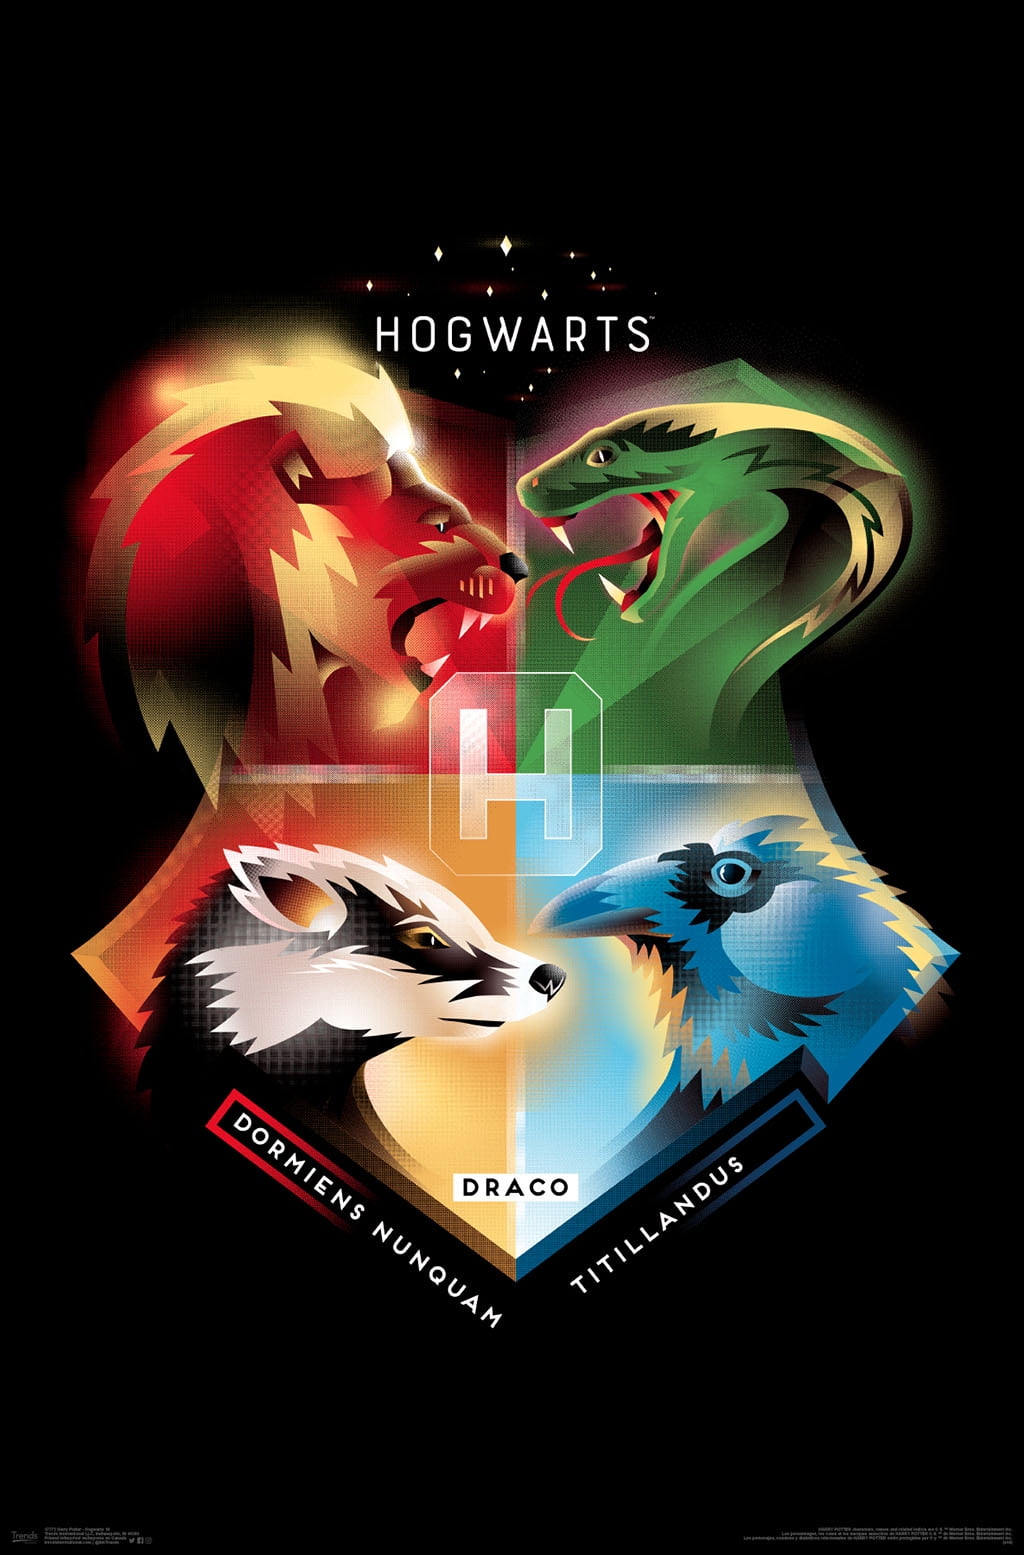 Harry Potter - Hogwarts Crest Poster (70X50 Cm)